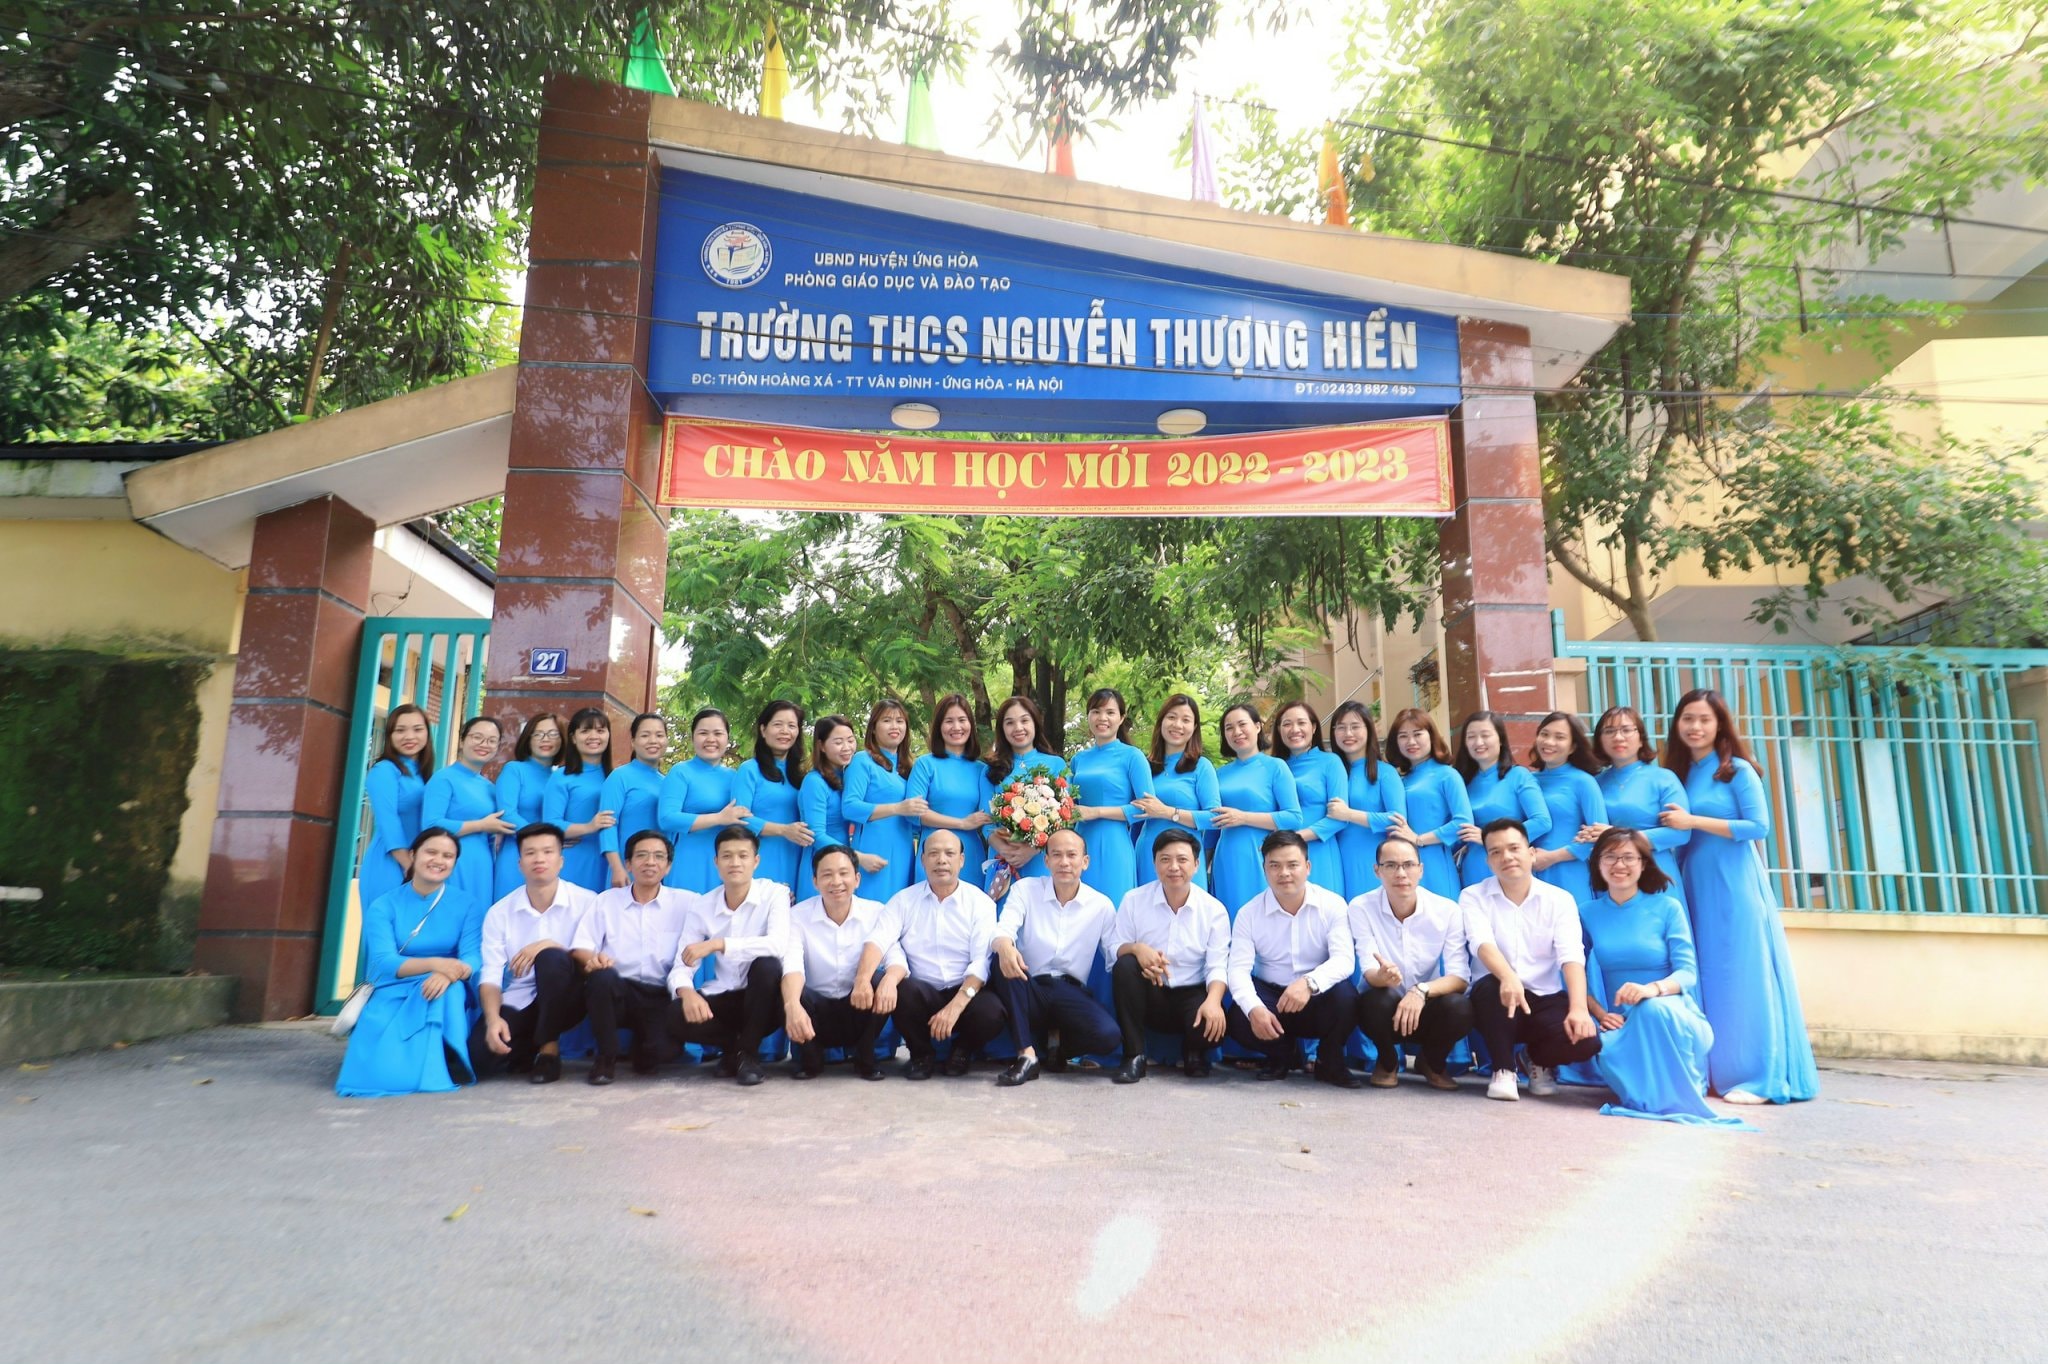 Trường THCS Nguyễn Thượng Hiền ảnh 1